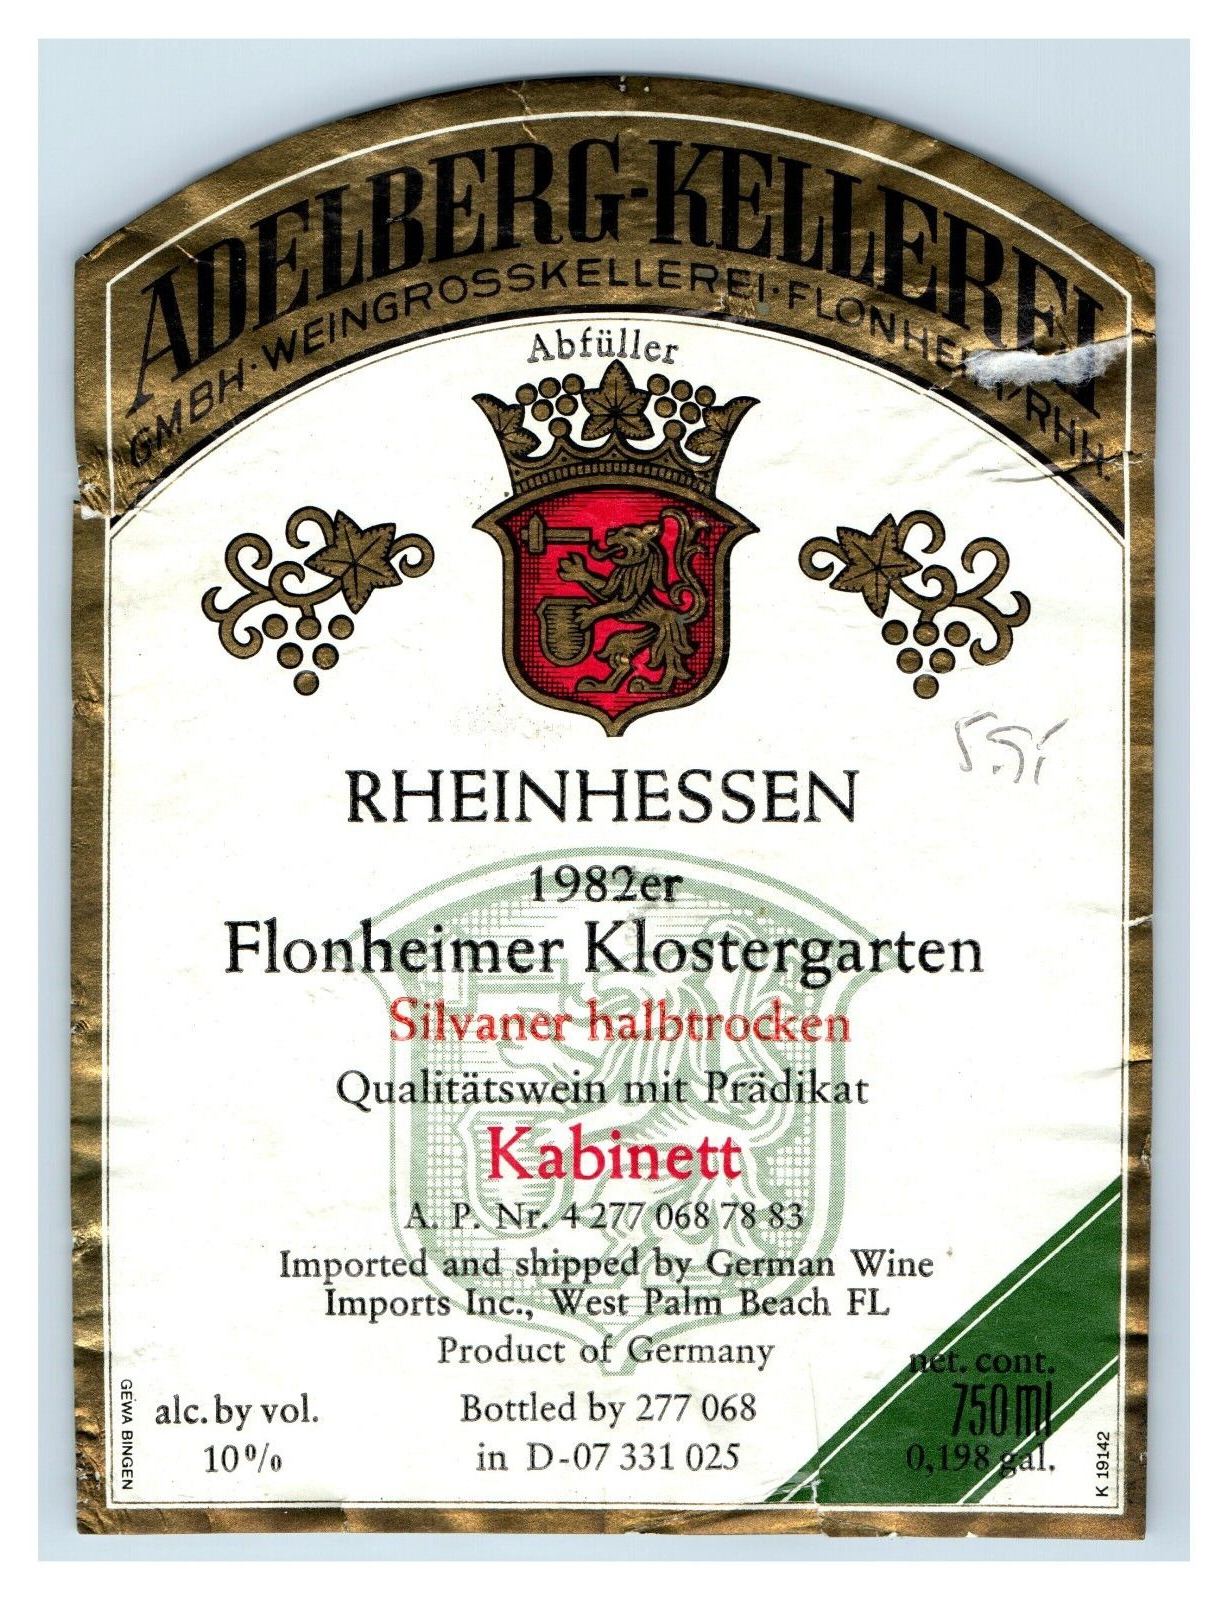 1970\'s-80\'s Rheinhessen Flonheimer Klostergarten German Wine Label Original S9